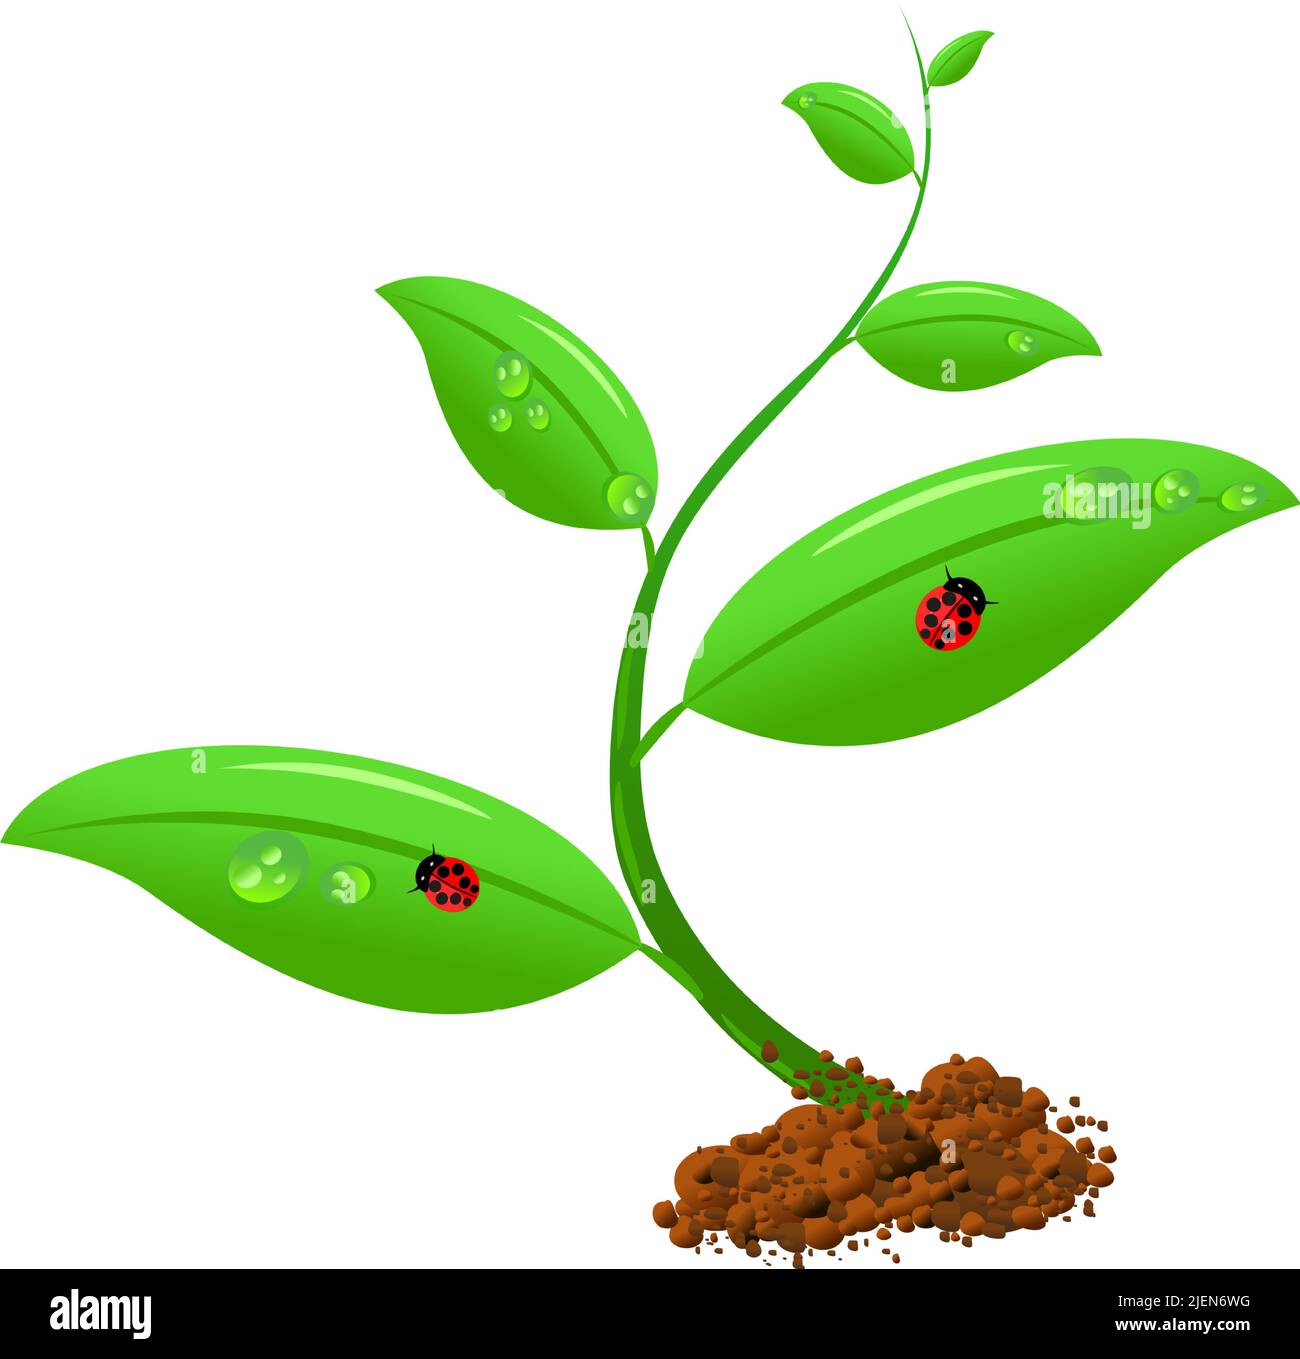 Frühlingsjunge Pflanze wächst aus dem Boden mit zwei Marienkäfer und Tröpfchen. Vektorgrafik Stock Vektor